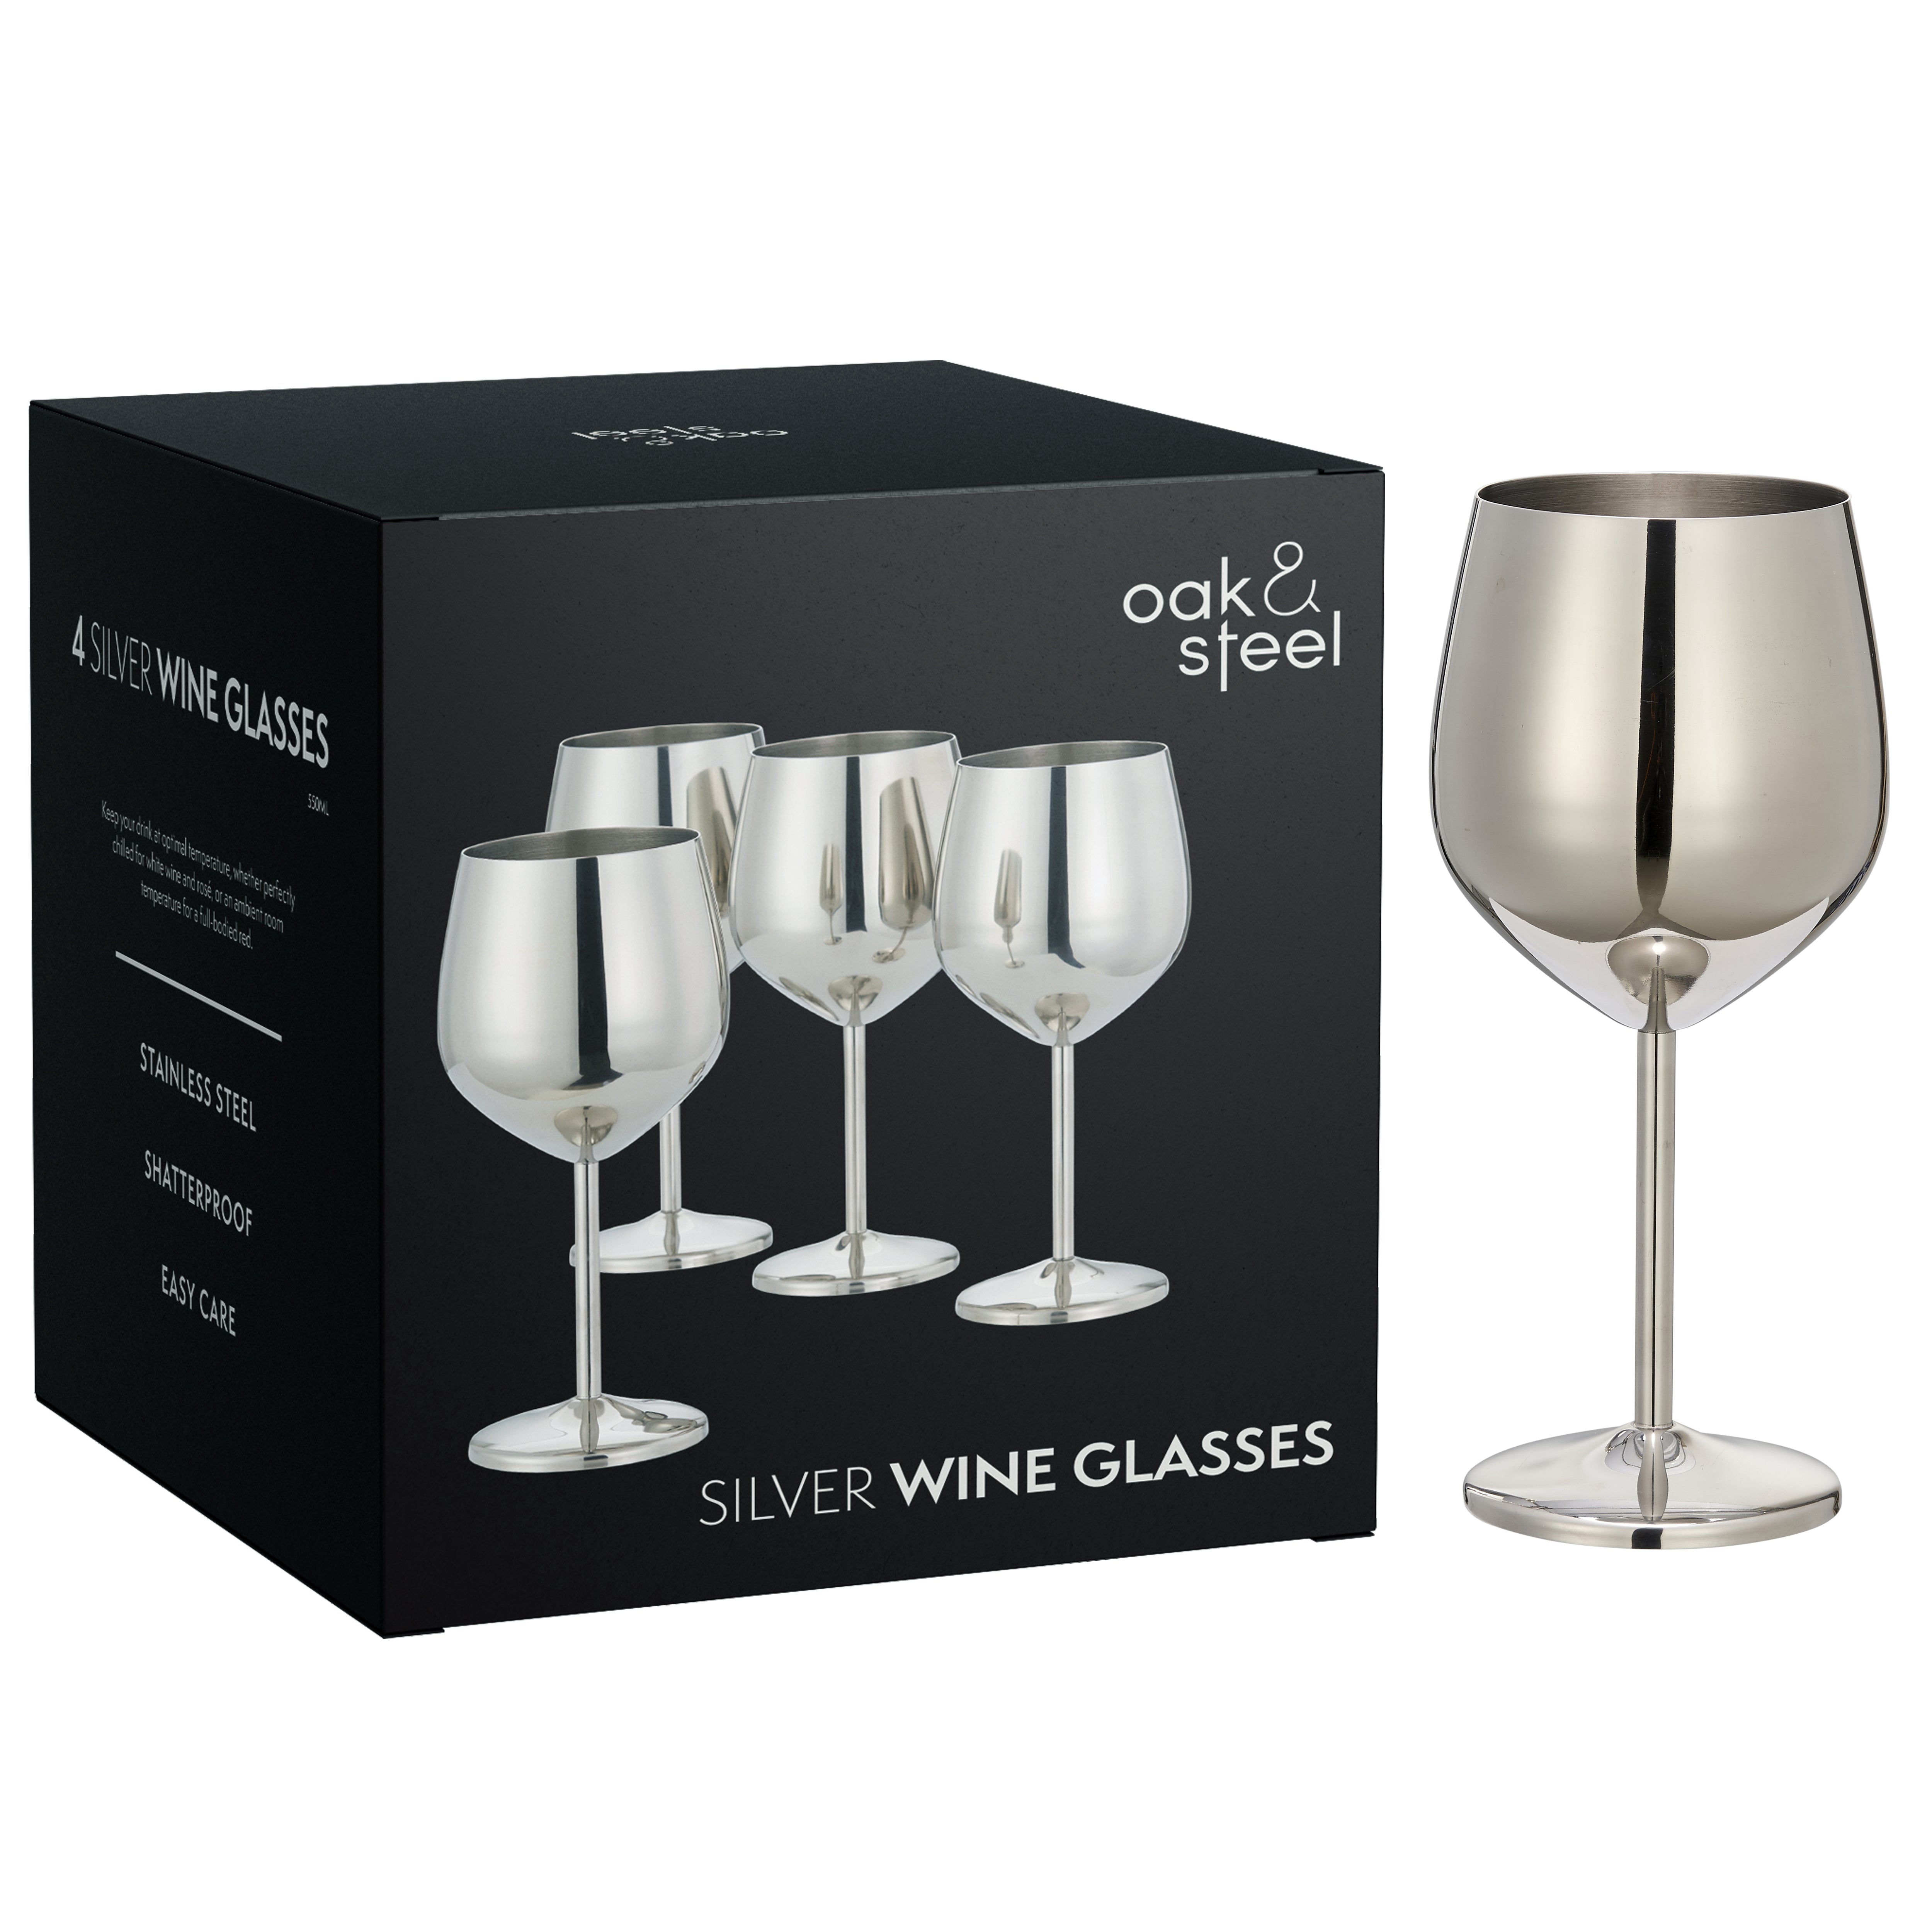 4 Silver Stainless Steel Wine Glasses – Oak & Steel